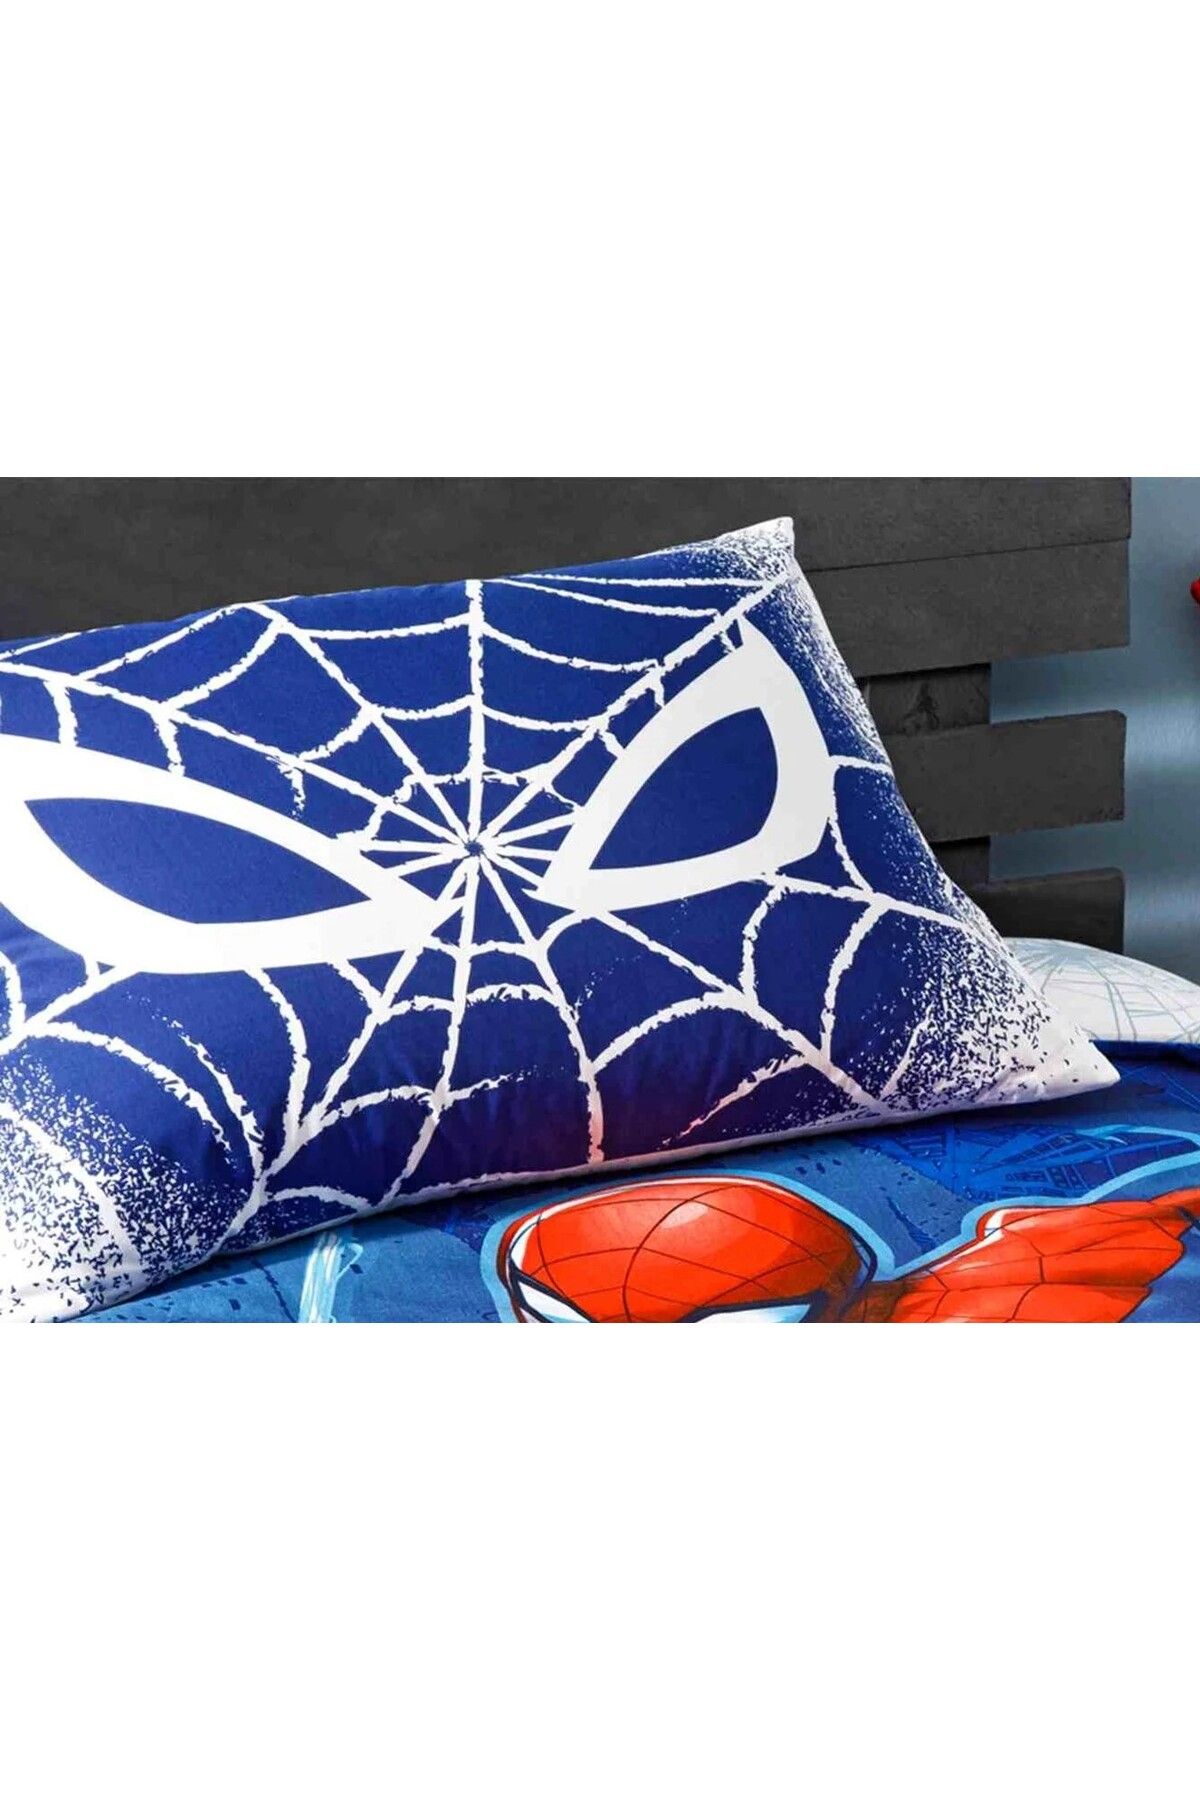 Taç Outlet Disney  Spider Man Blue % 100 Pamuk Lisanslı Yastık Kılıfı 1 Adet